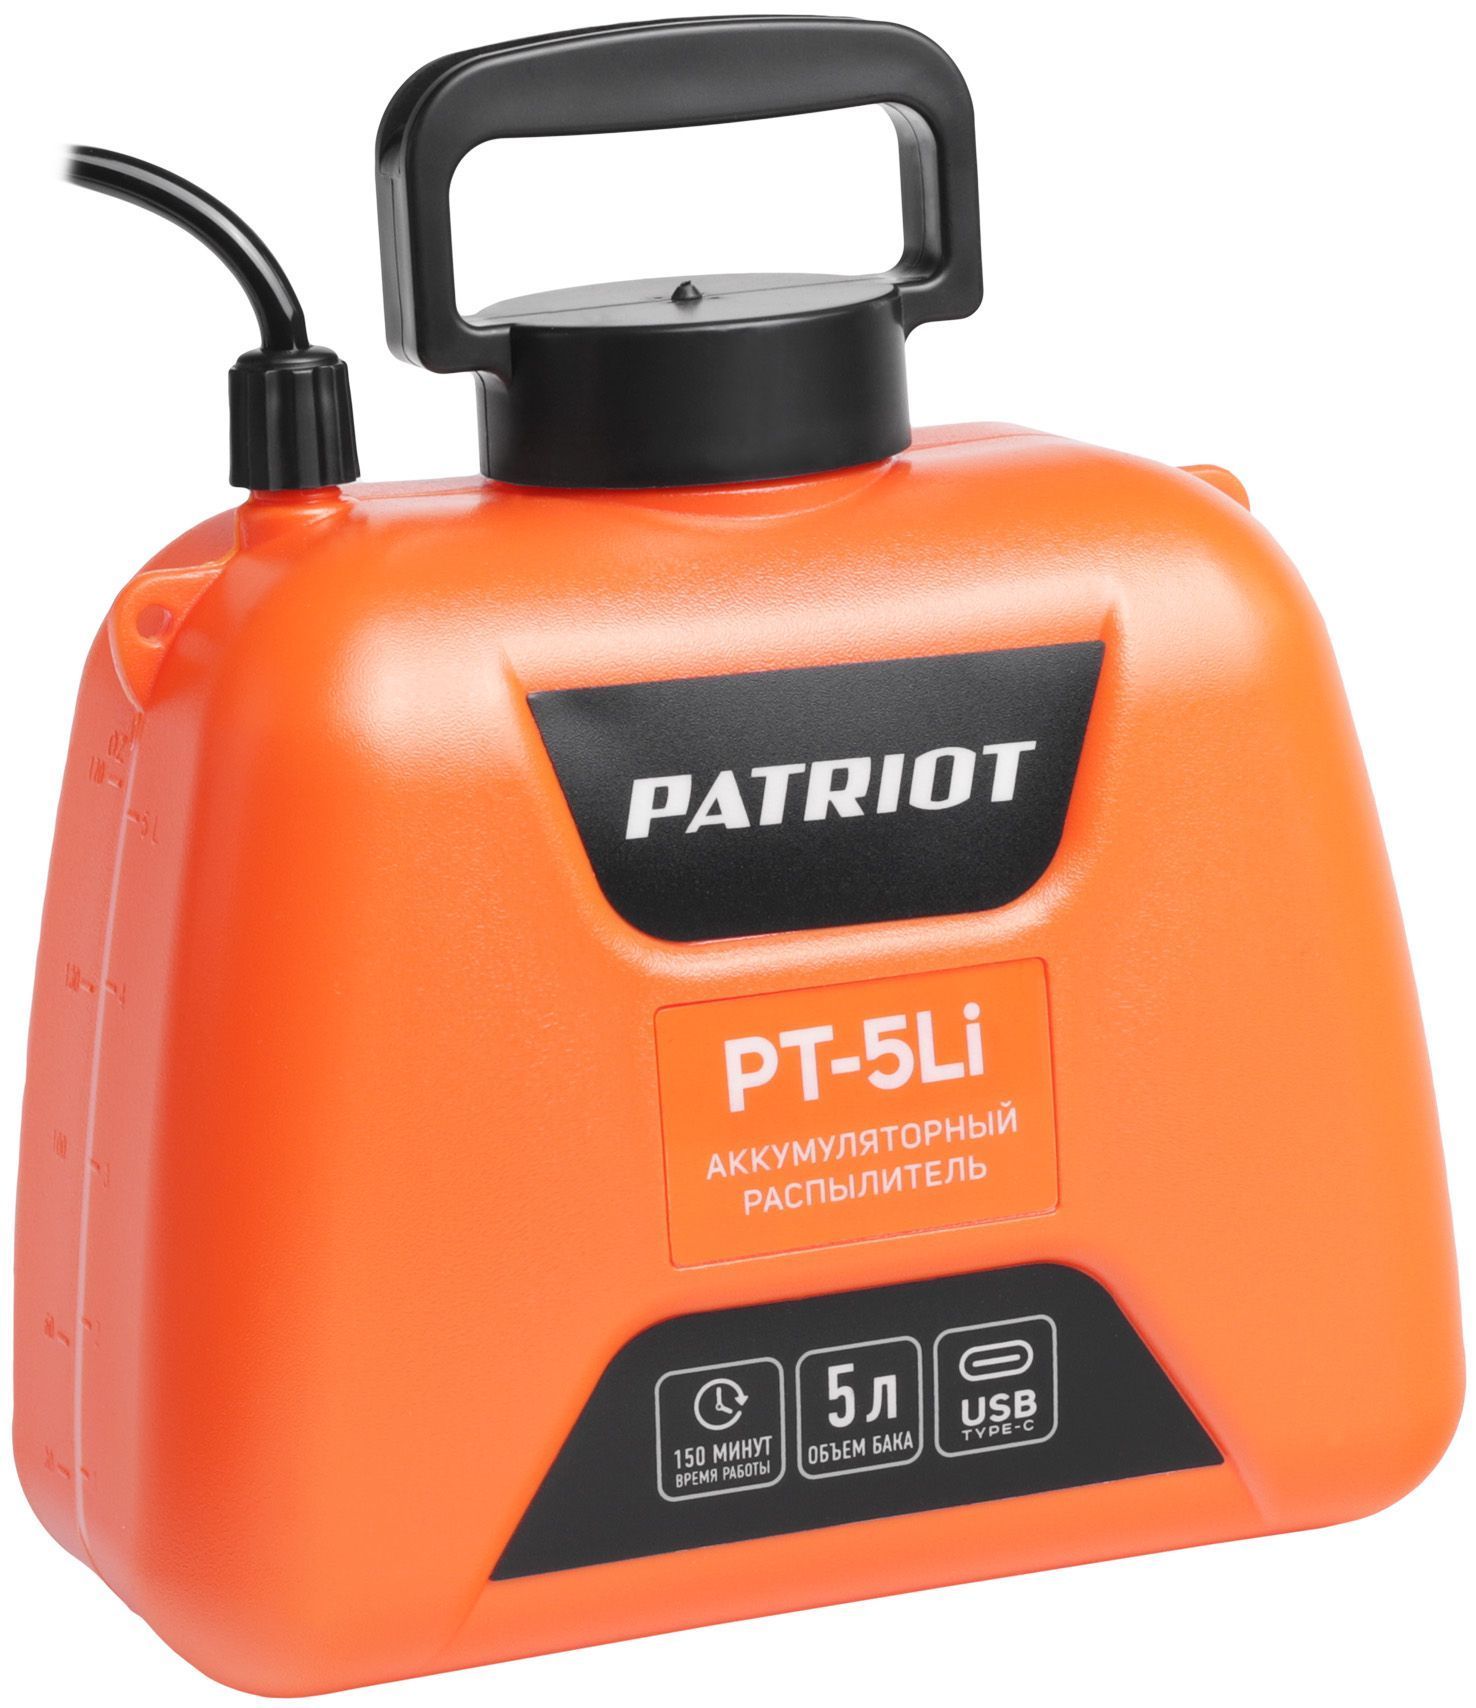 Опрыскиватель аккумуляторный Patriot PT-5Li 755302609 Patriot от магазина Tehnorama